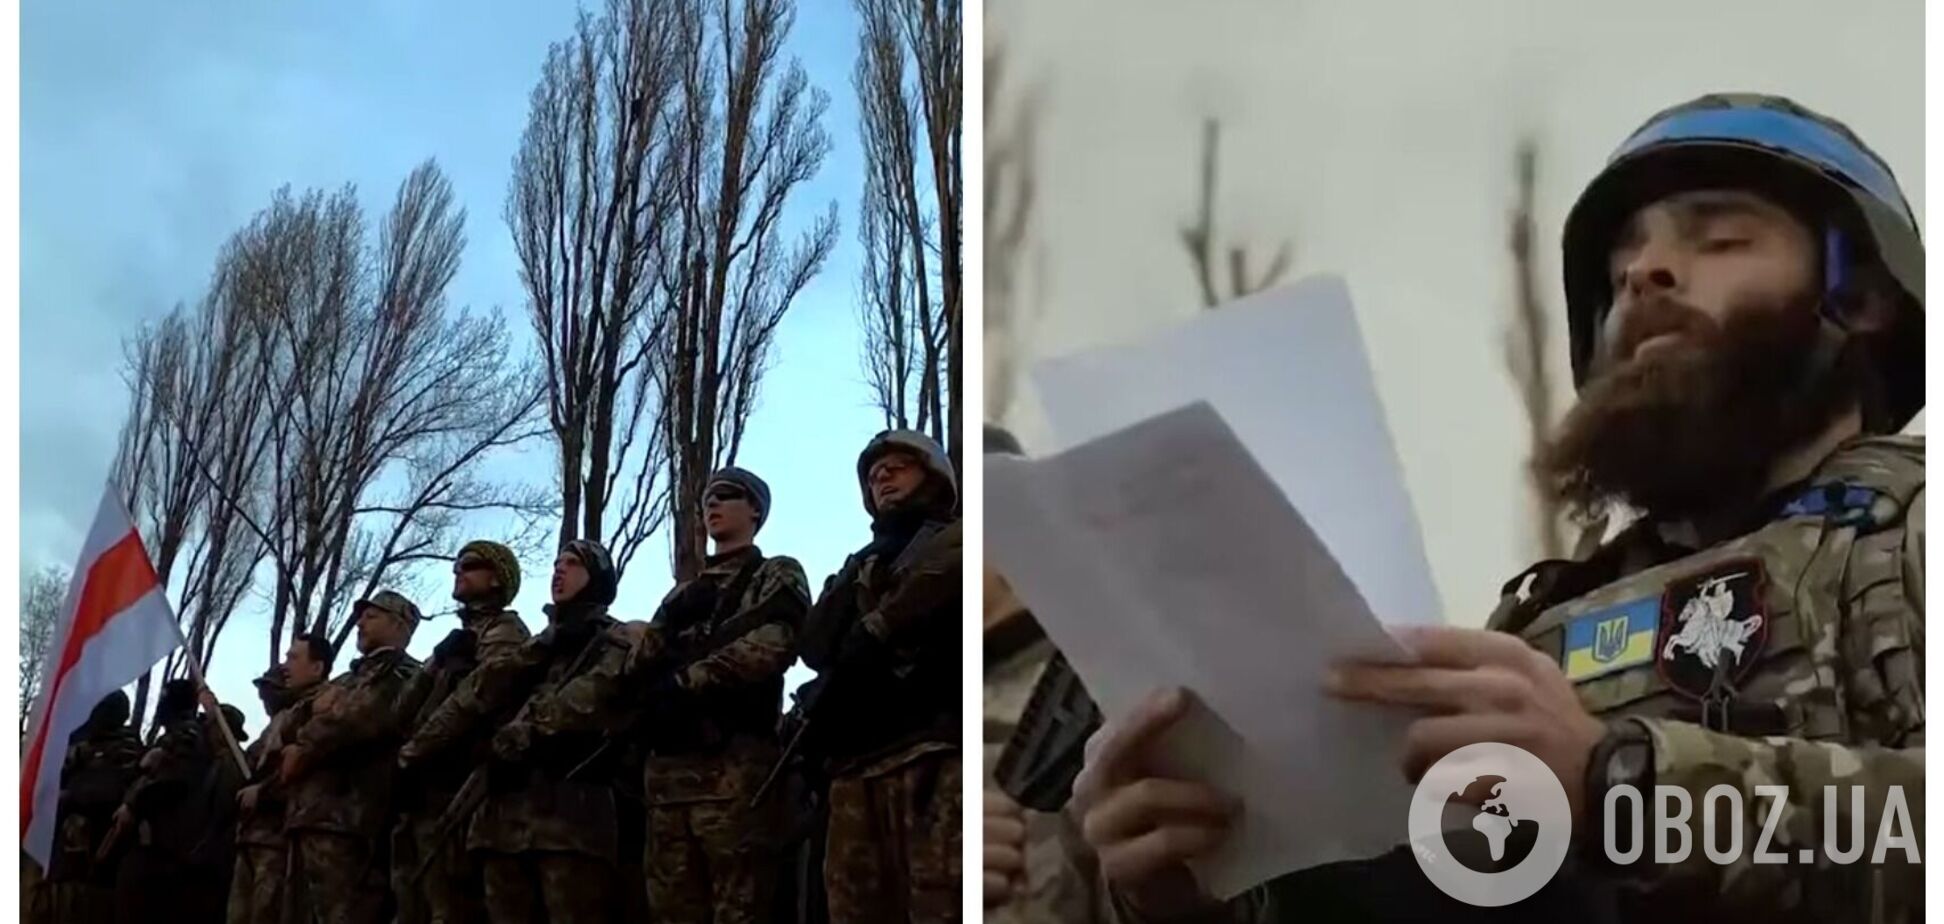 Белорусский батальон вошел в состав Вооруженных сил Украины: бойцы приняли присягу. Видео